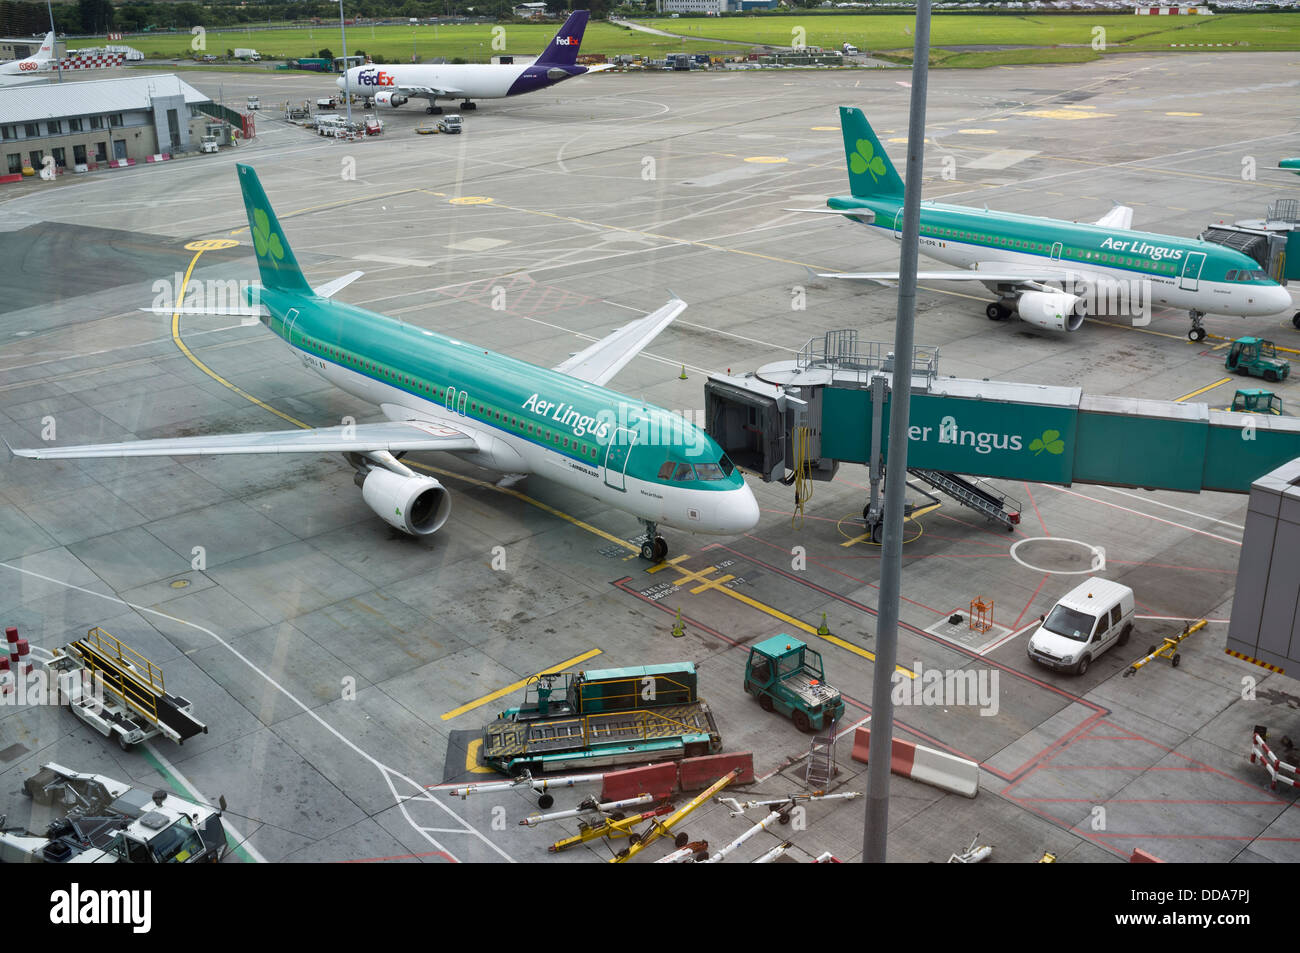 Aer lingus avions stationnés sur le tarmac de l'aéroport de Dublin, le Terminal 2, de l'Irlande. Banque D'Images